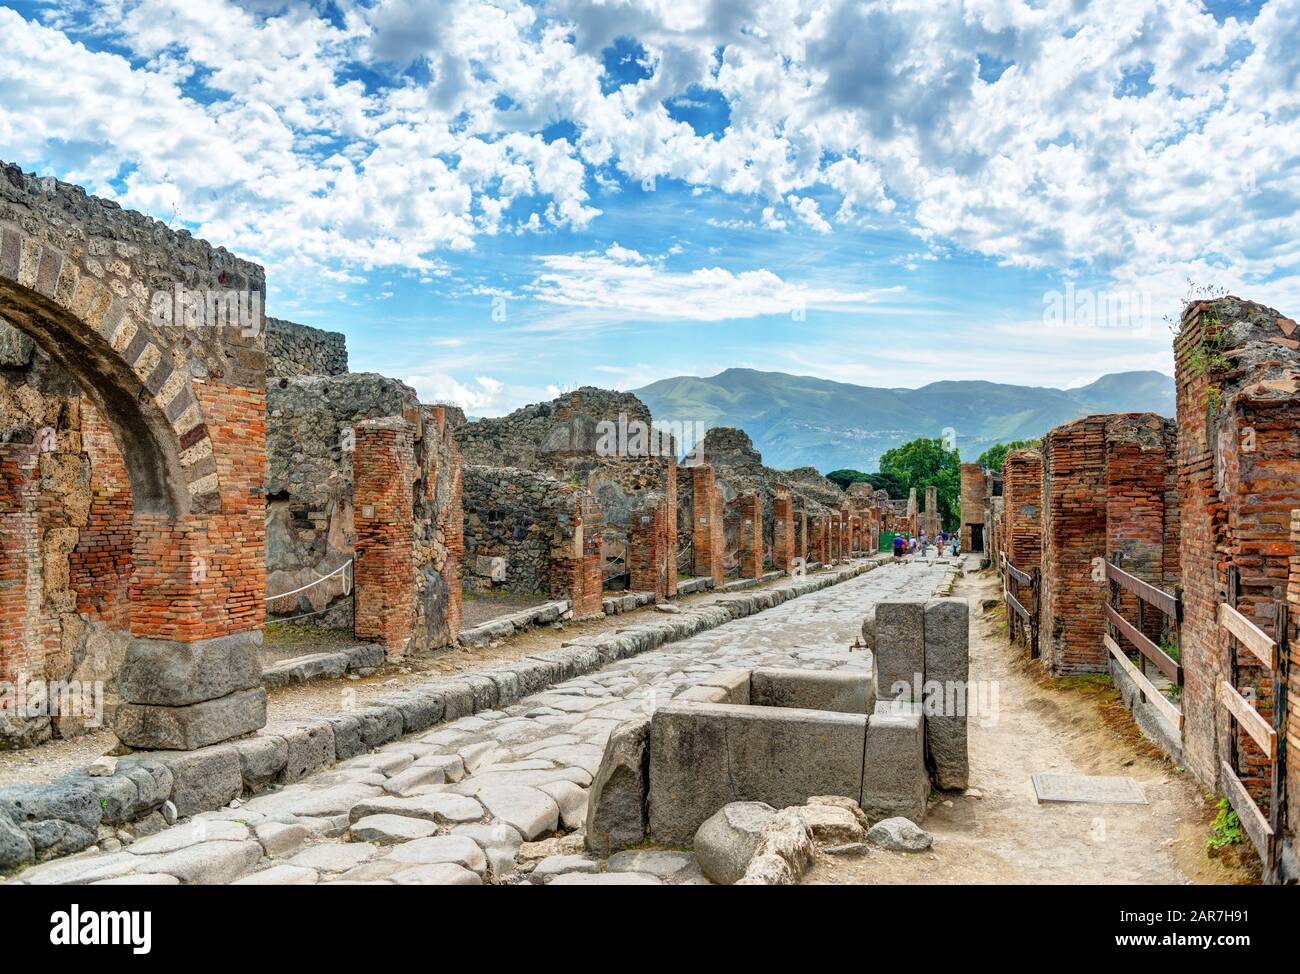 Straße in Pompeji, Italien. Pompeji ist eine antike römische Stadt, die durch den Ausbruch des Vesuvs im 1. Jahrhundert starb. Stockfoto